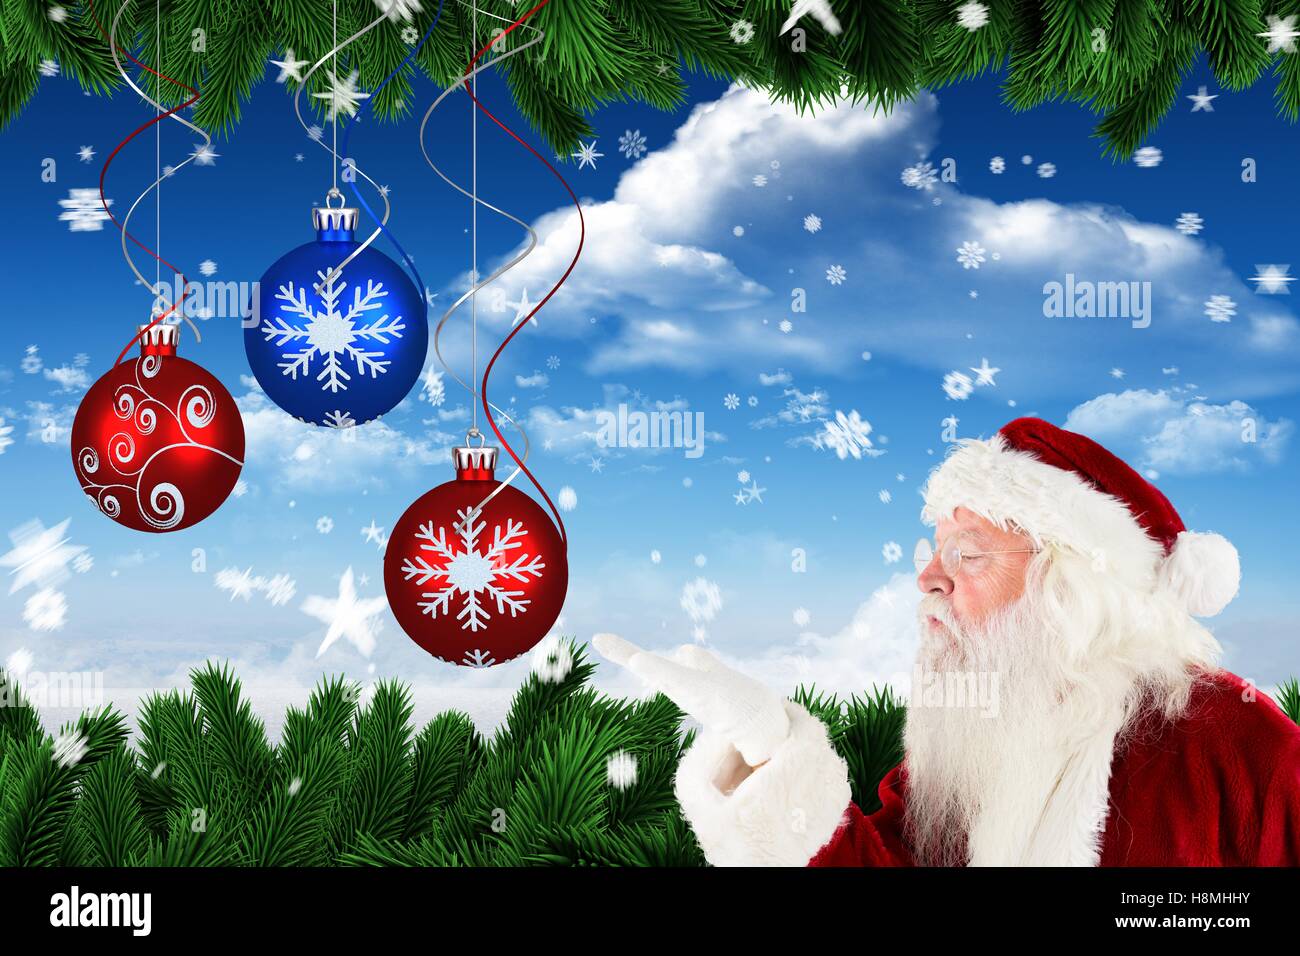 Santa claus blowing a snowflake Stock Photo